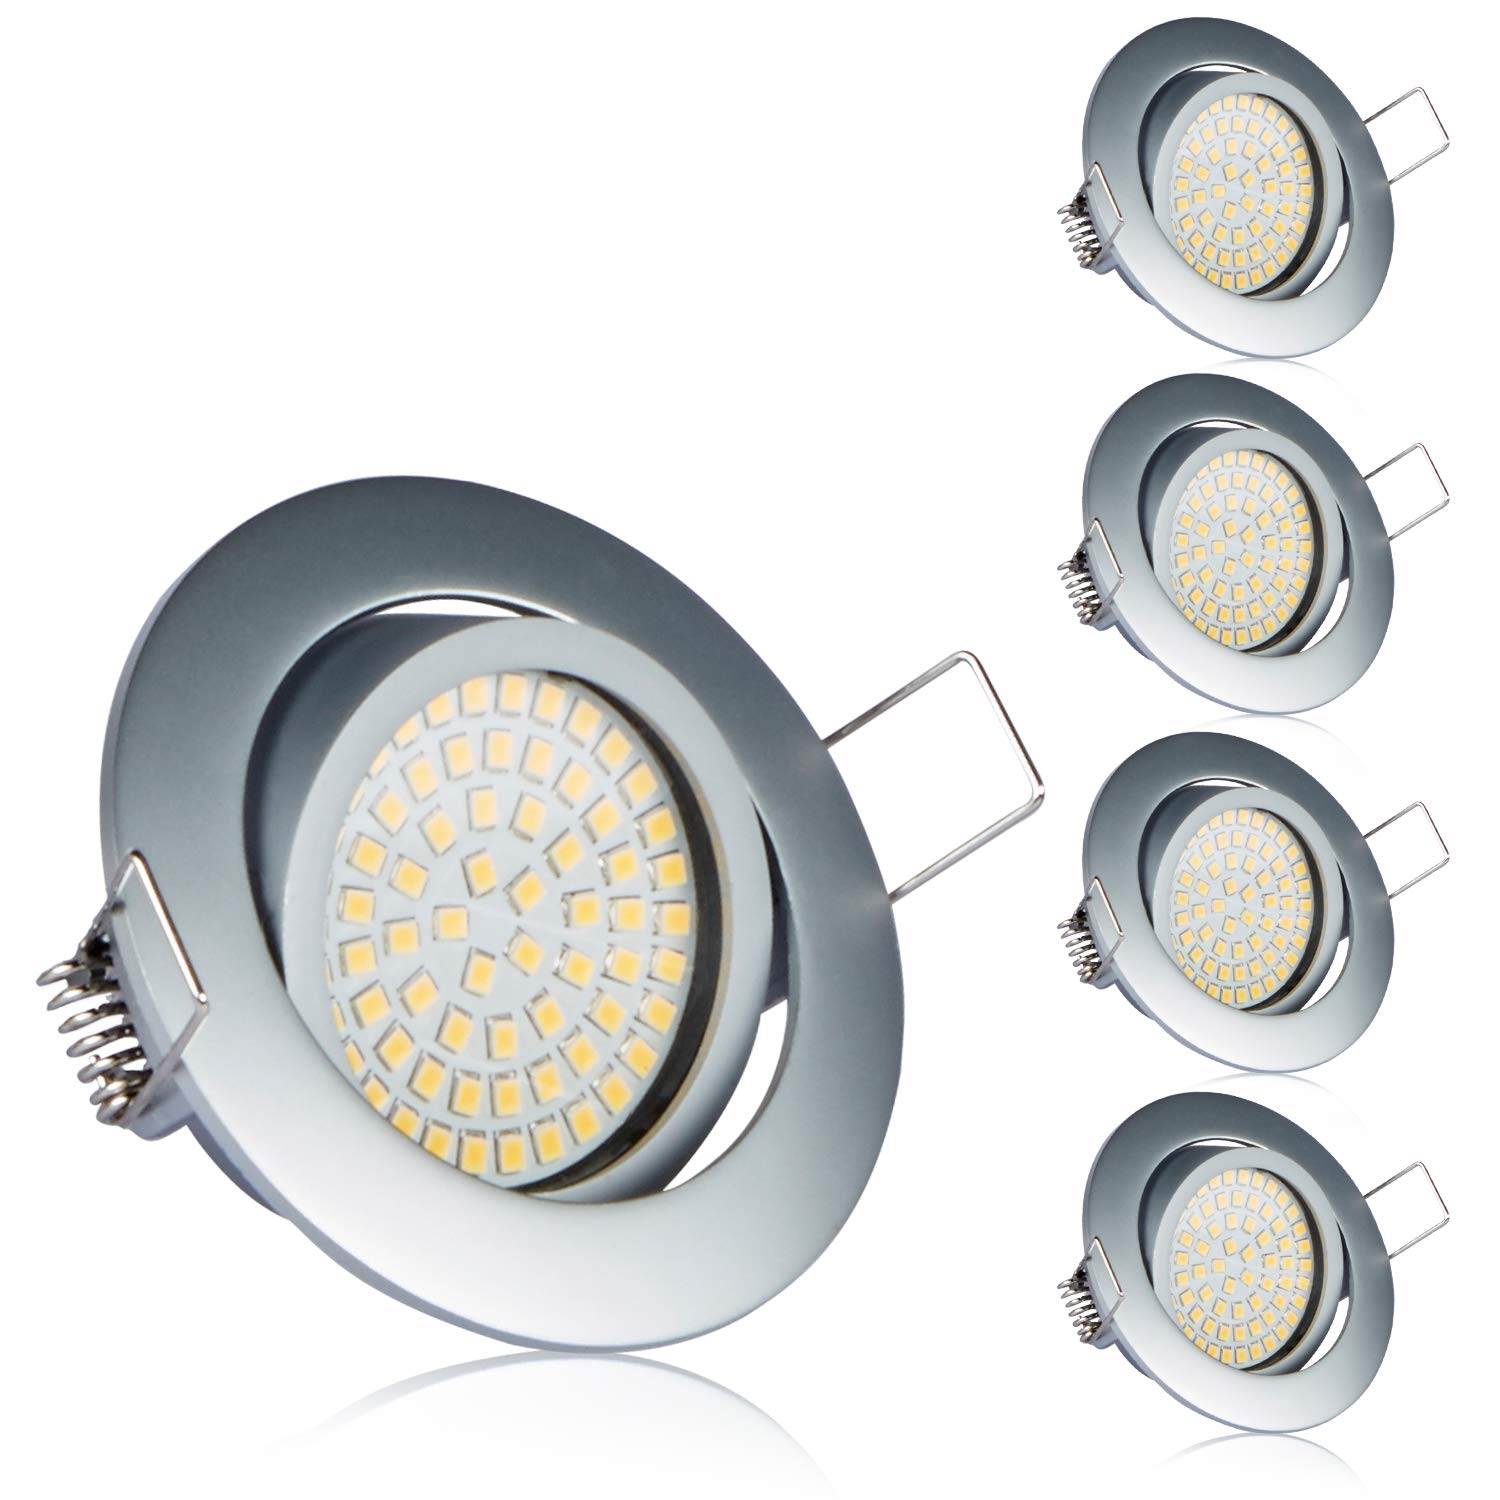 TEVEA PREMIUM LED Einbauleuchte - 230v - Schwenkbare LED Einbaustrahler - Deckenspot - Warmweißes Licht - Austauschbar - Ultra Flach - Energieklasse A+ - (5-er set)